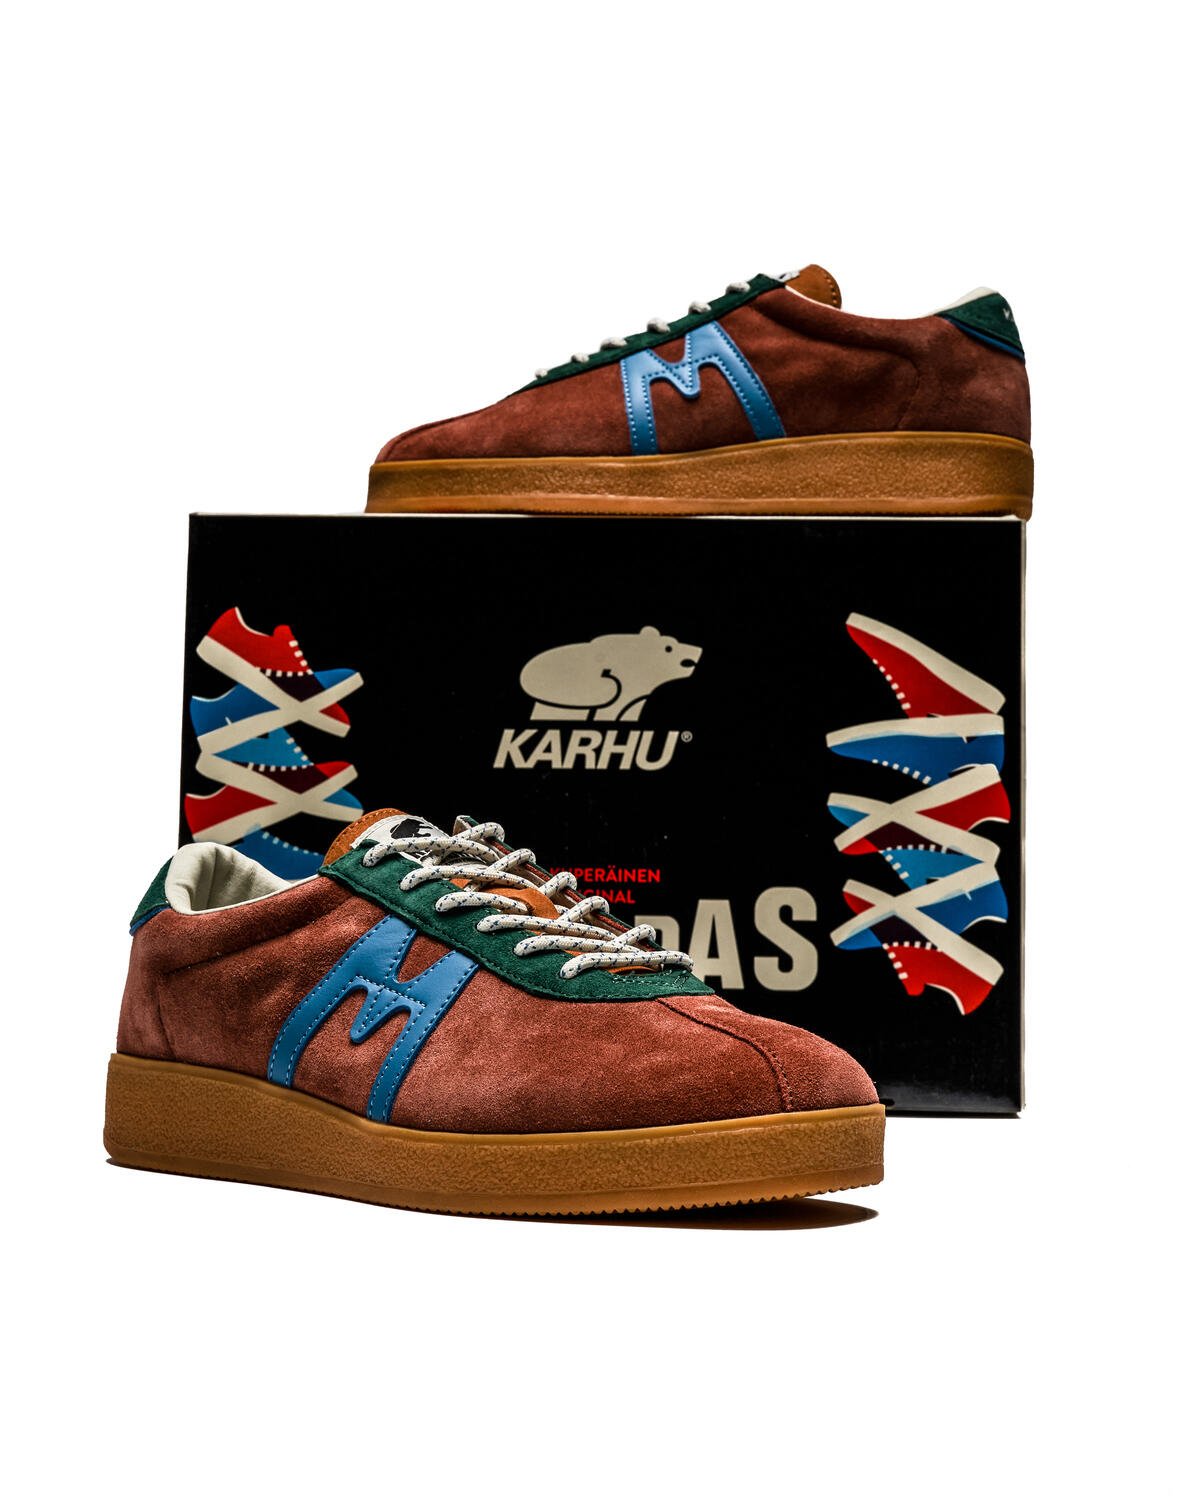 Shoes, Karhu Trampas